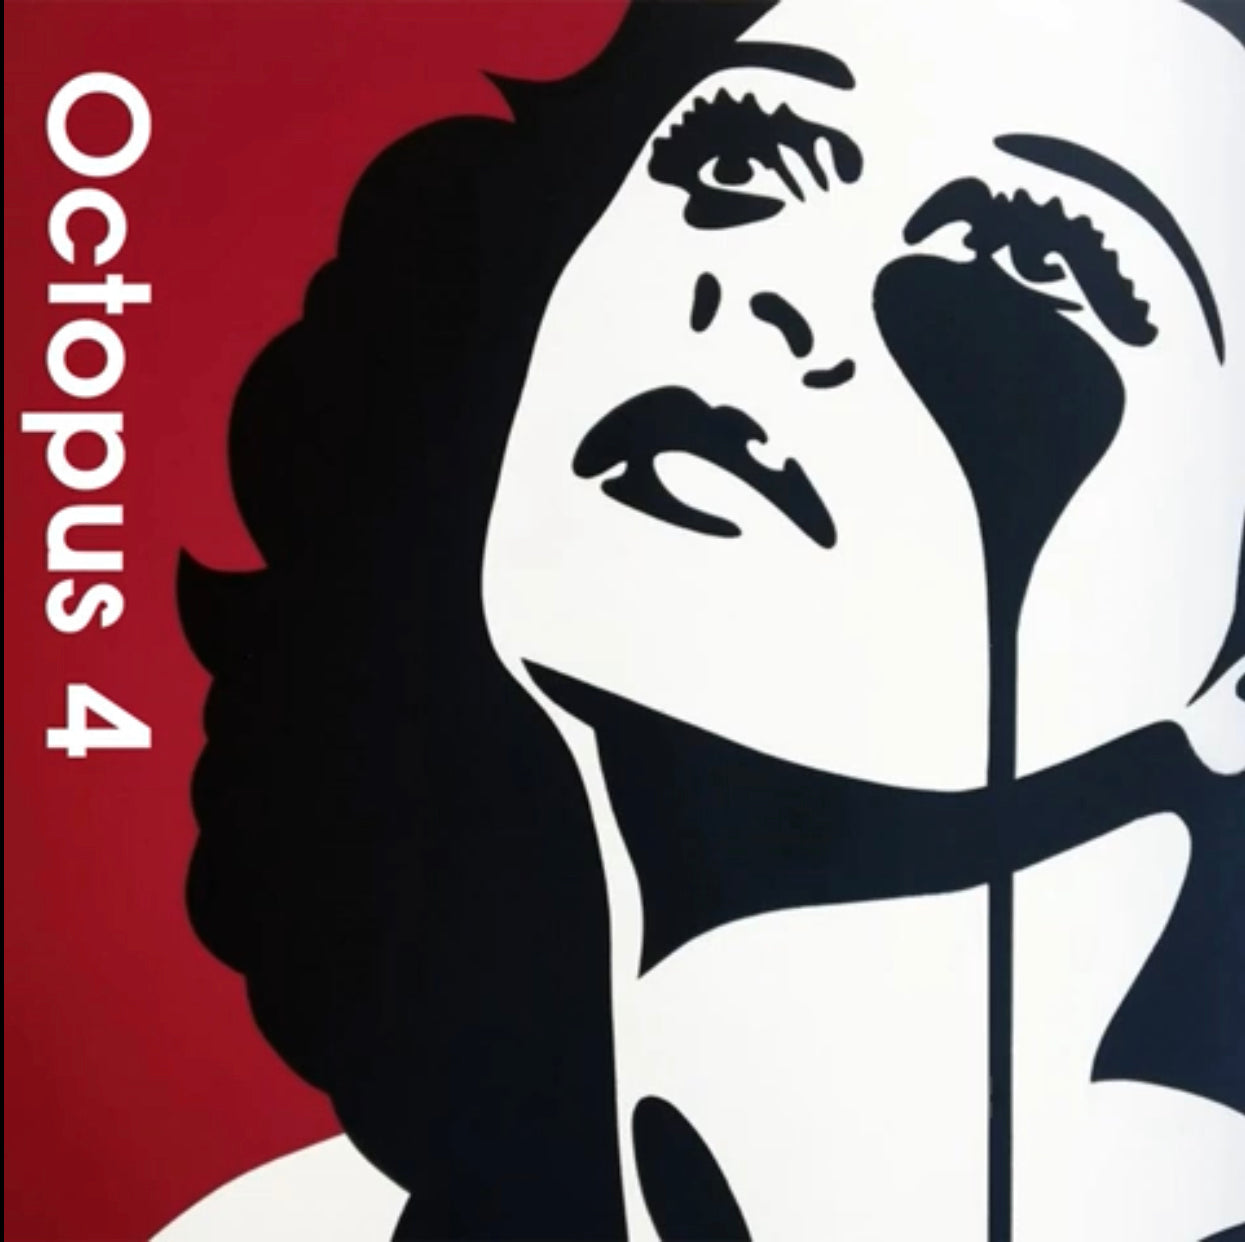 Octopus 4 - New Album